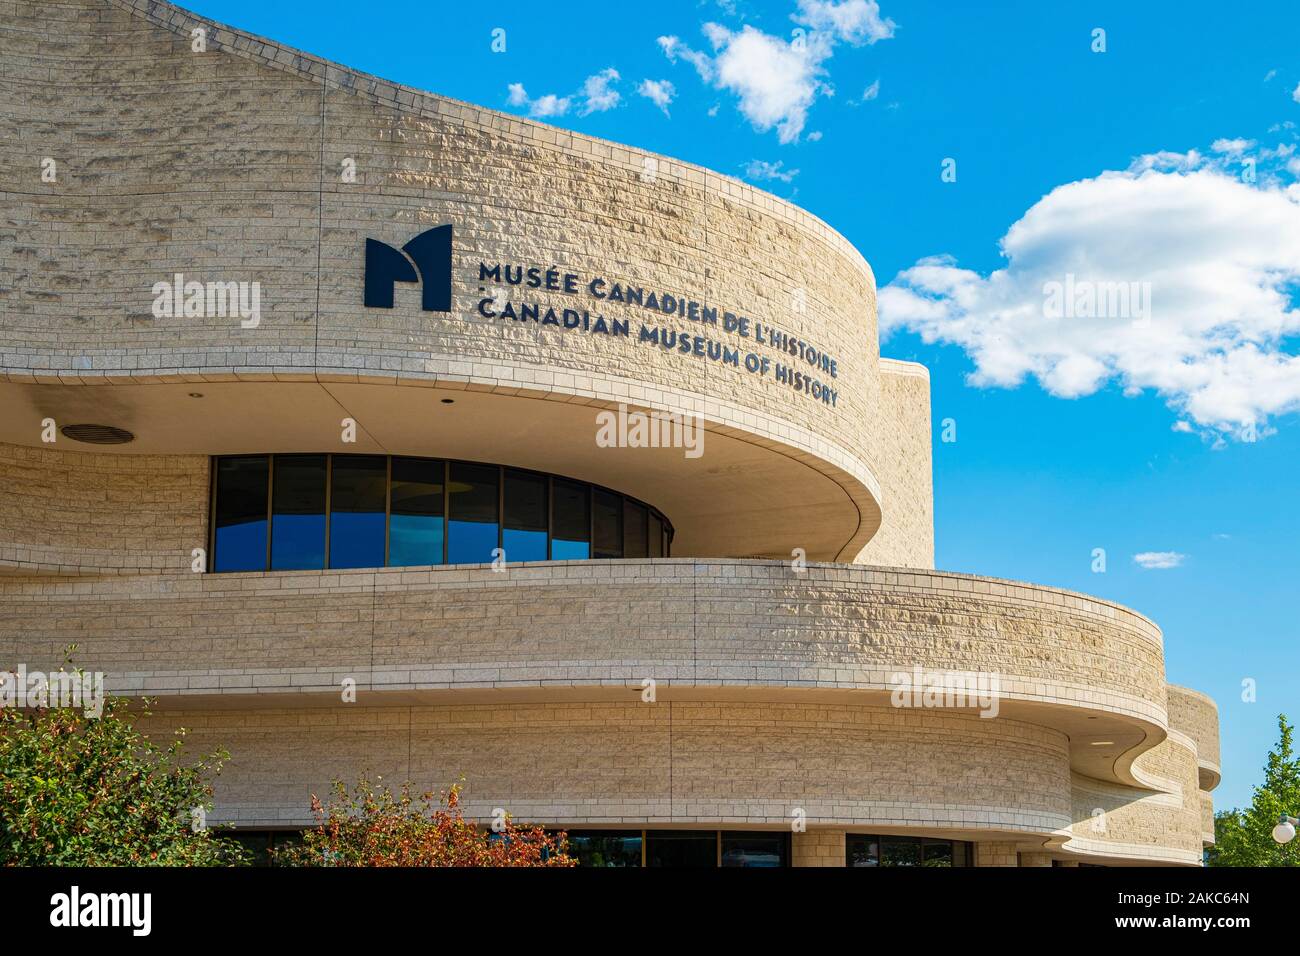 Le Canada, la province de Québec, région de l'Outaouais, Gatineau, le Musée canadien de l'histoire Banque D'Images